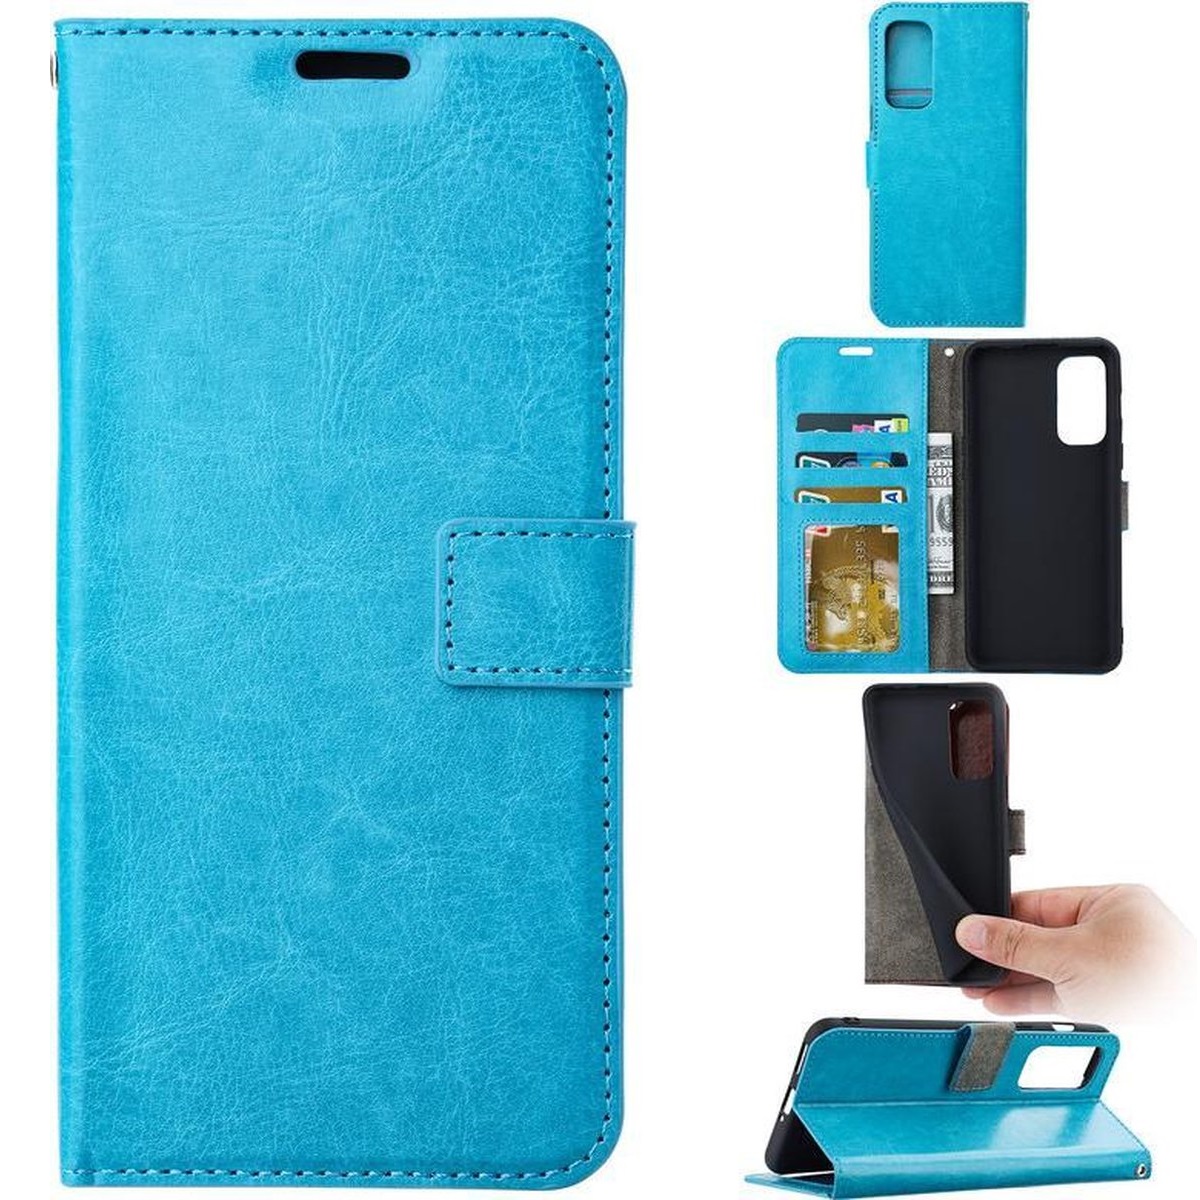 heroïsch totaal lening Telefoon Wallet Bookcase geschikt voor Samsung Galaxy Xcover 4 / 4S -  Portemonnee telefoonhoesje voor Bankpassen -Kunstleer - Siliconen Houder -  Magnetische sluiten- Turquoise - All4Gadgets